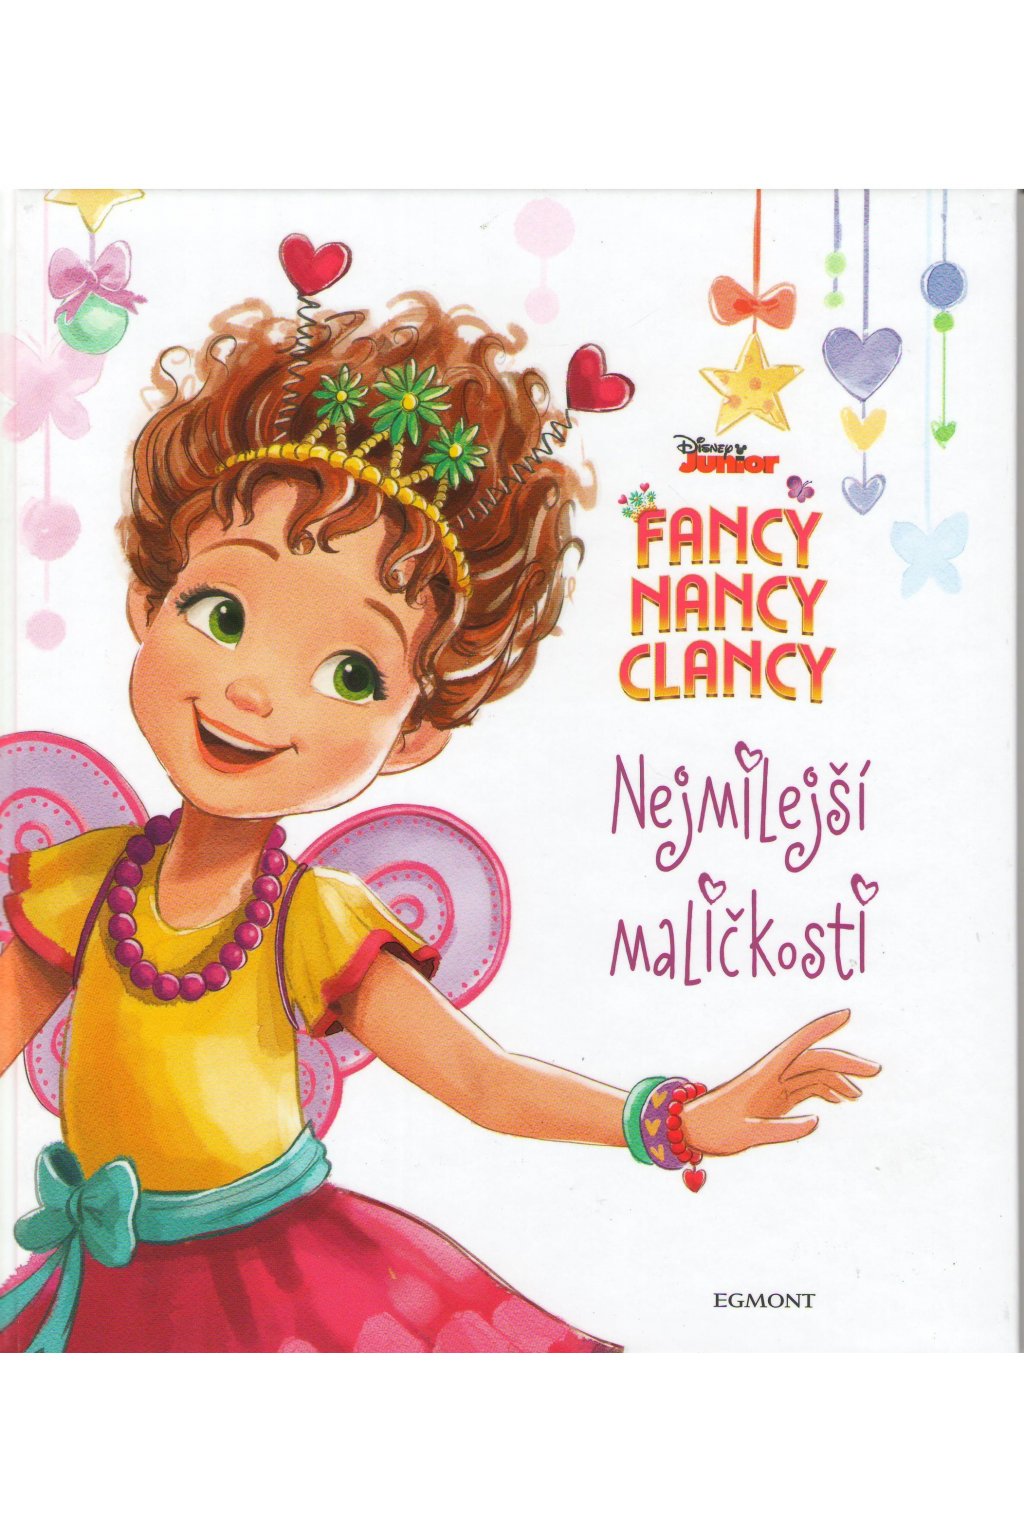 Fancy Nancy Clancy: Nejmilejší maličkosti